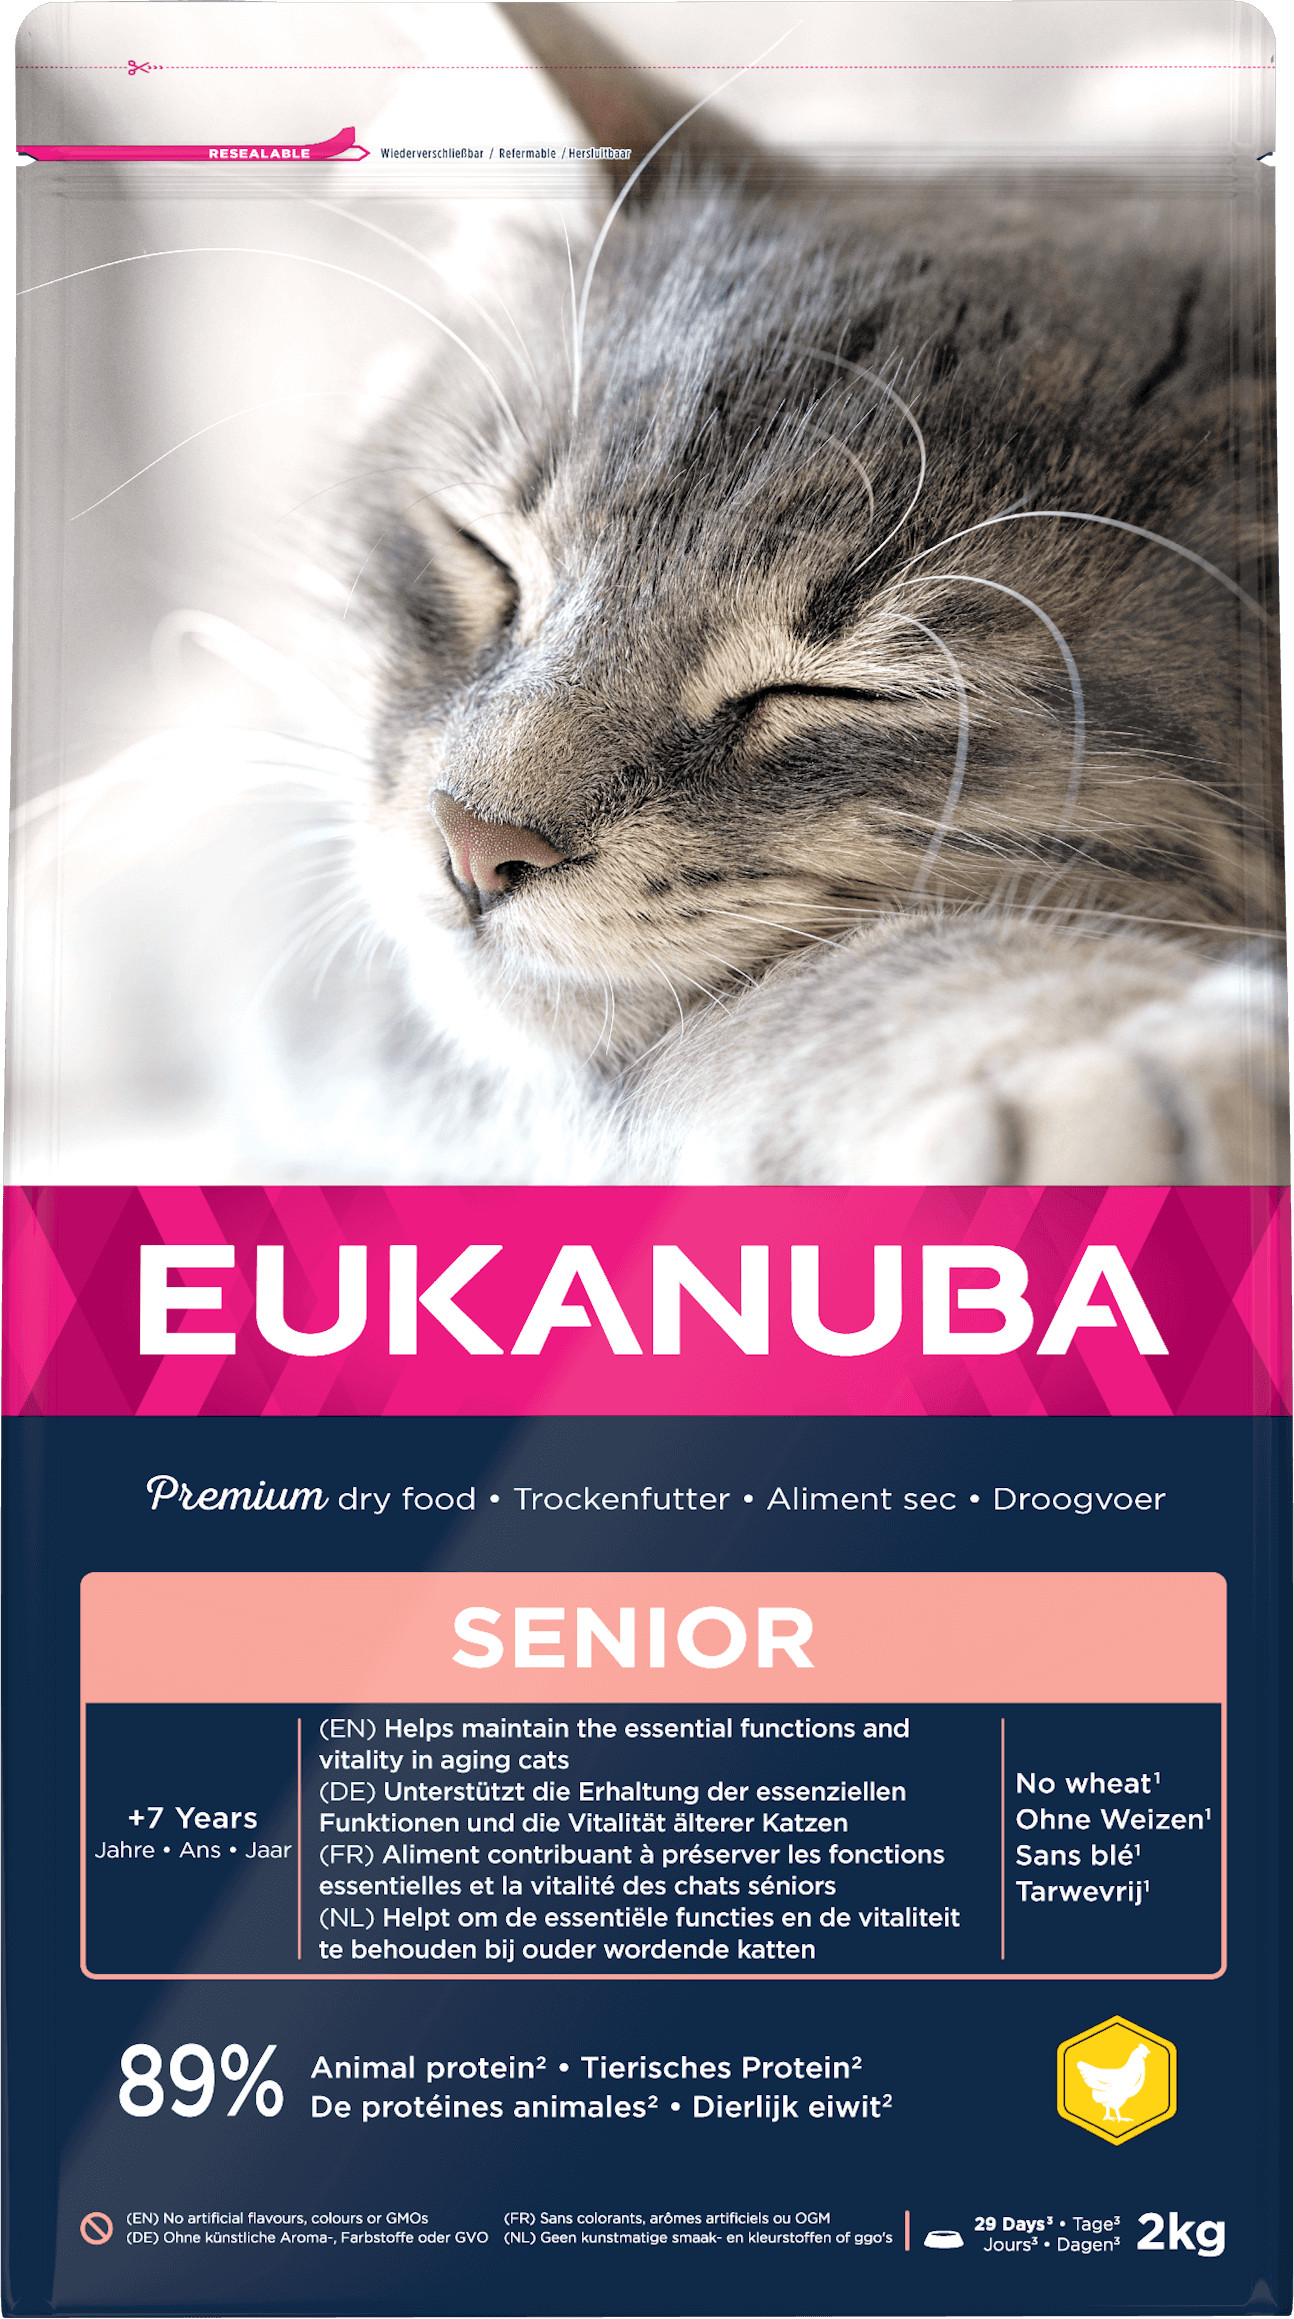 Eukanuba Senior kylling kattefoder